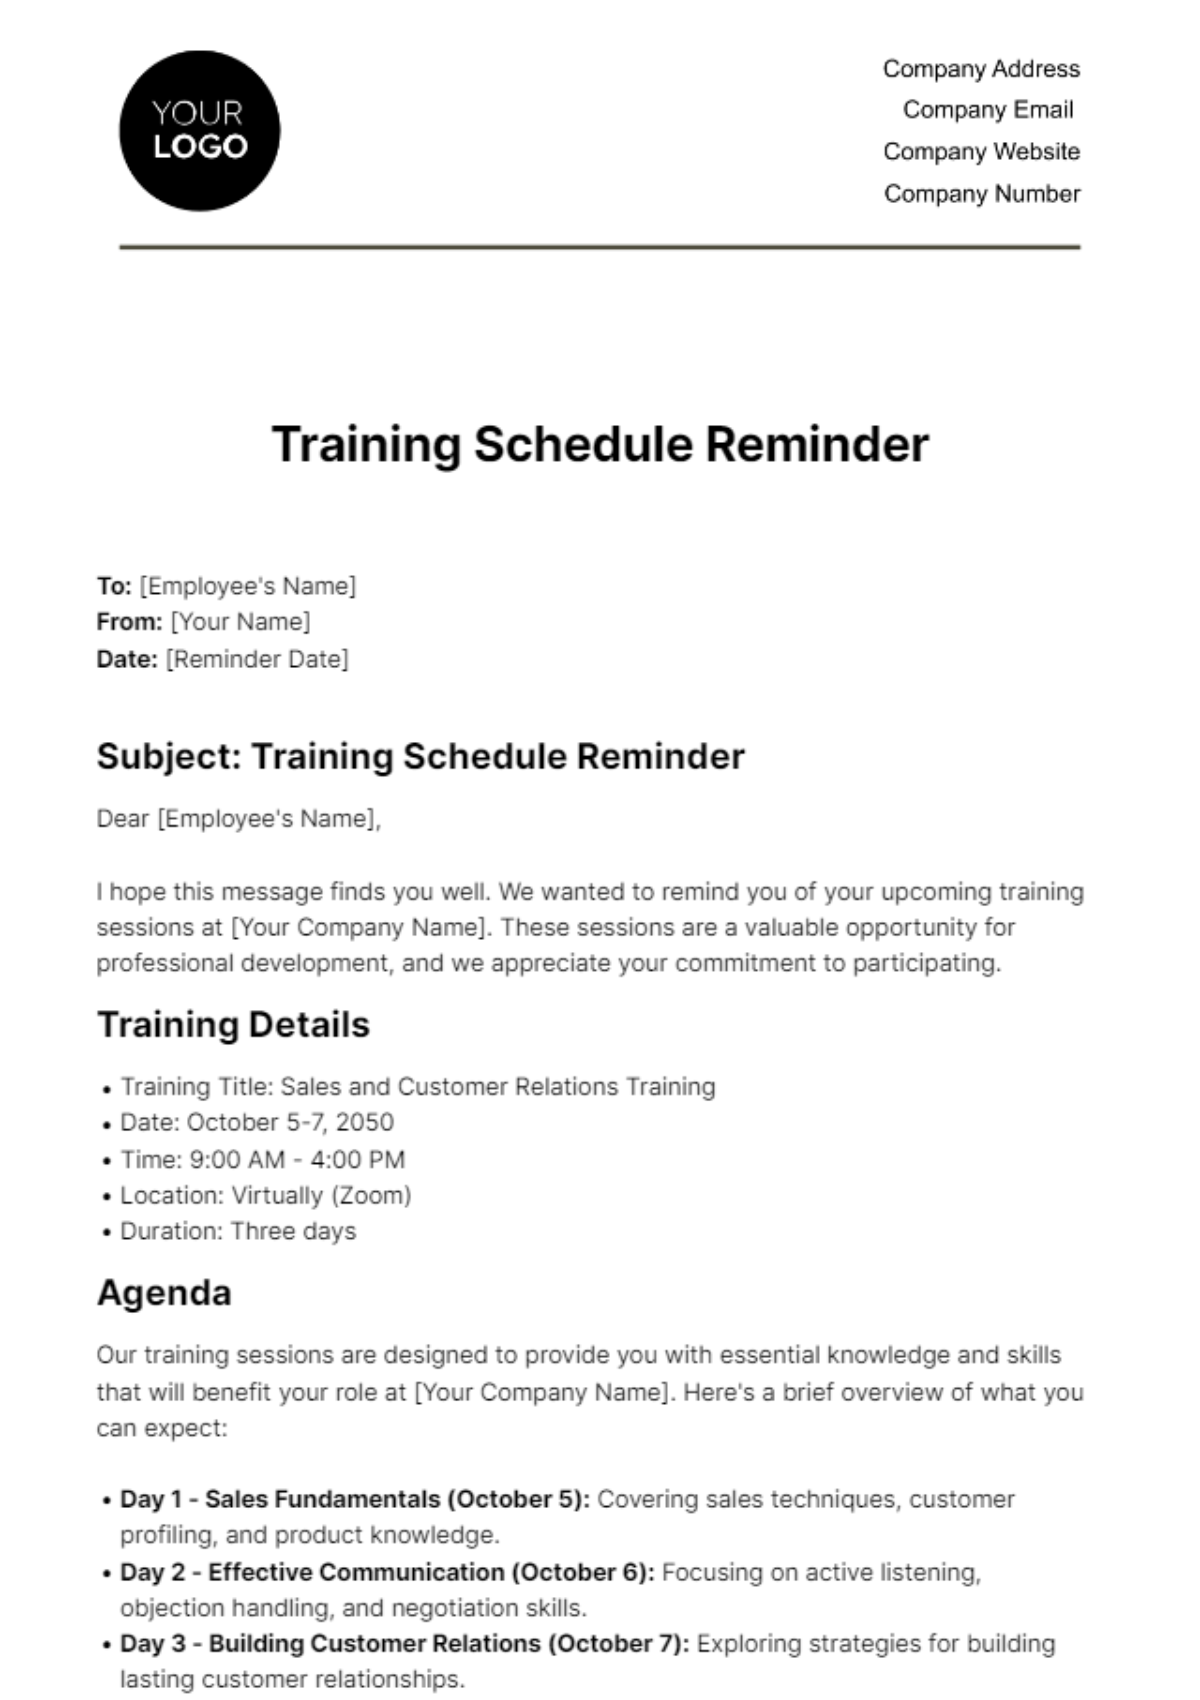 Training Schedule Reminder HR Template